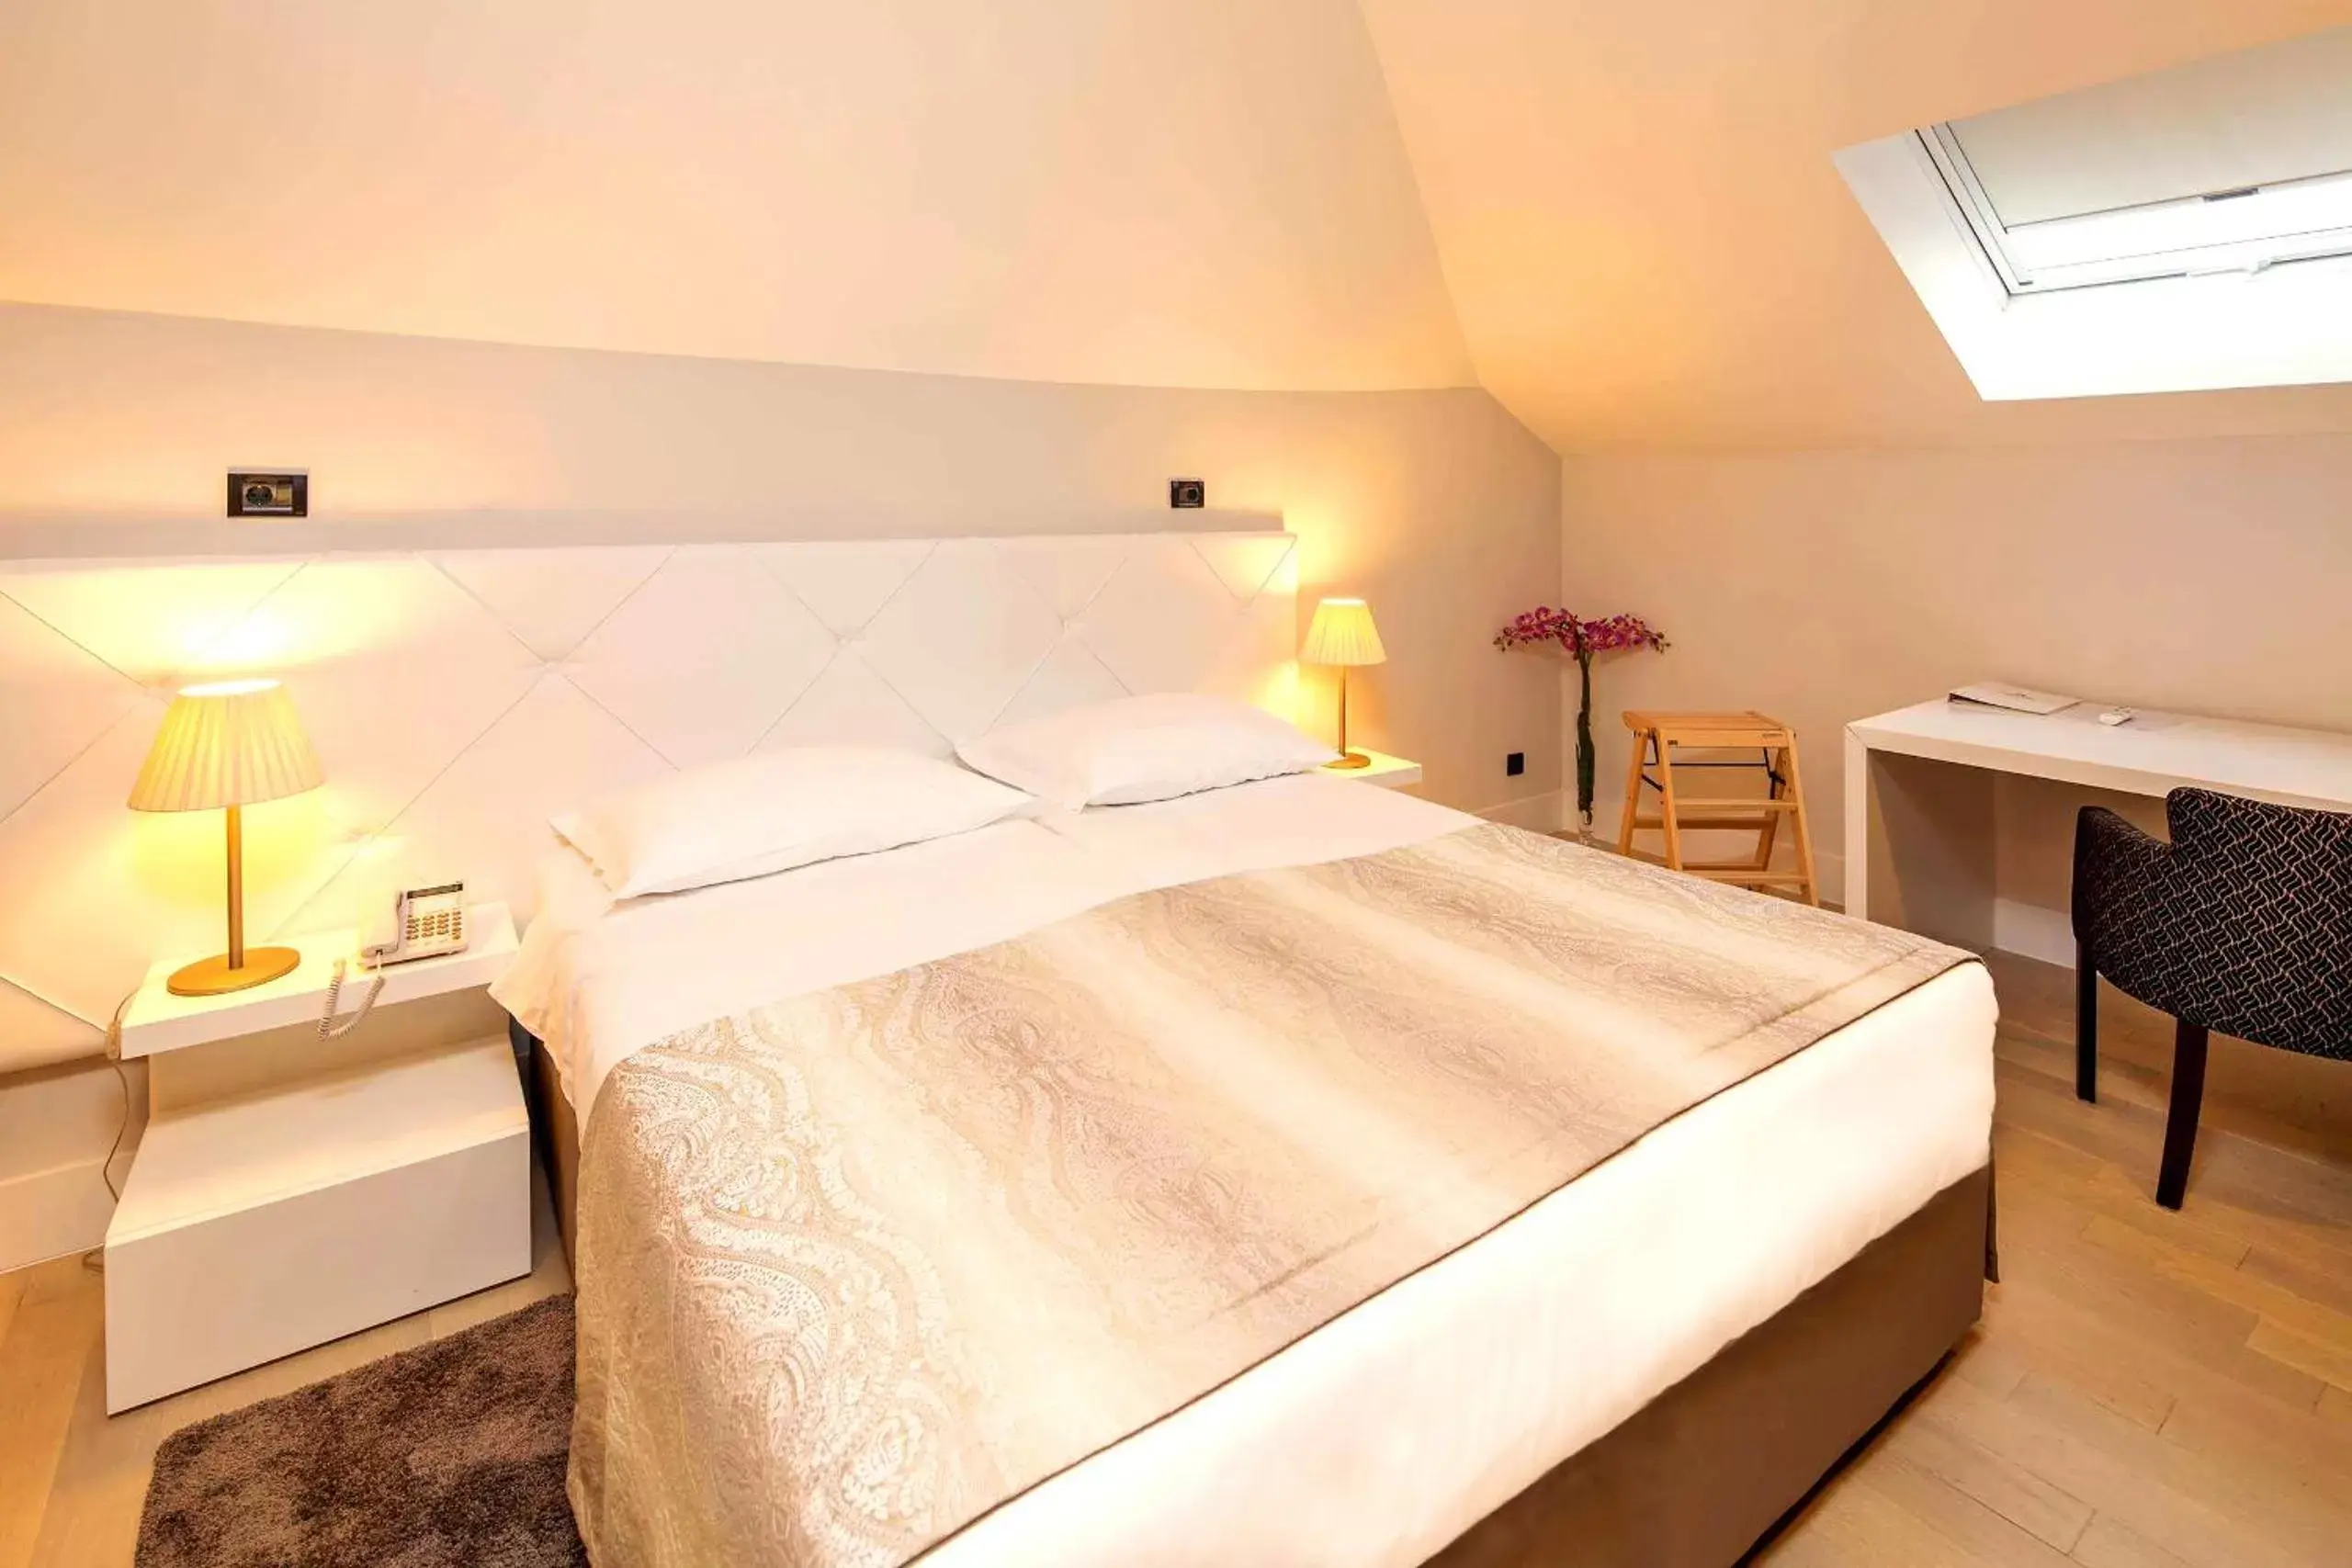 Bed in Cornaro Hotel